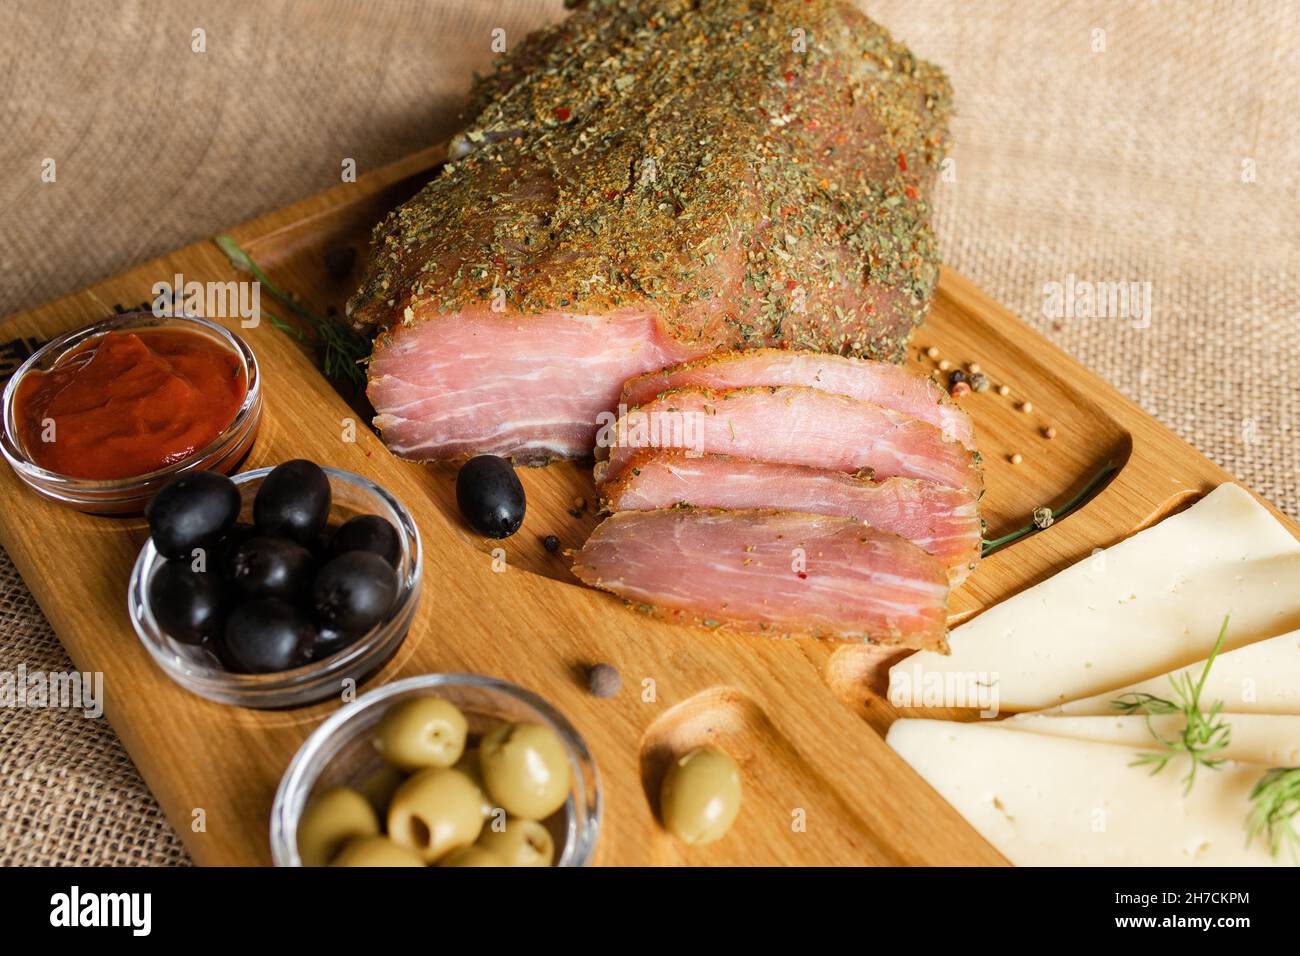 Filetto di maiale stagionato sul banco di servizio in legno con formaggio, olive, pepe nero, salsa di pomodoro. Antipasto con filetto a scatto. Piatto di bielorusso Foto Stock